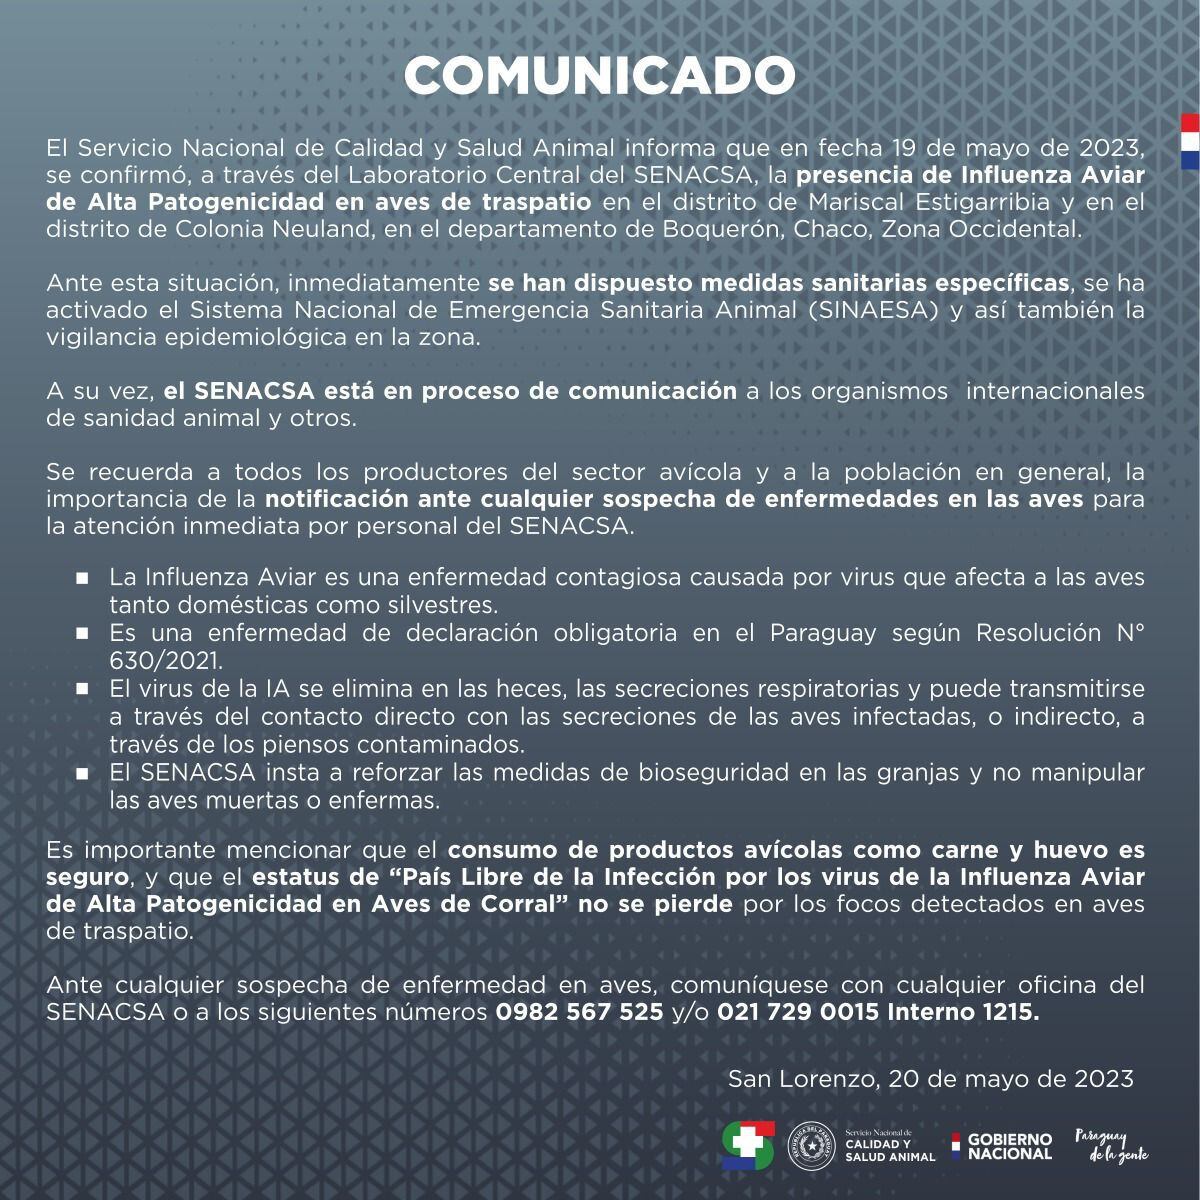 Comunicado de Senacsa informando de los dos primeros casos confirmados de gripe aviar en Paraguay.